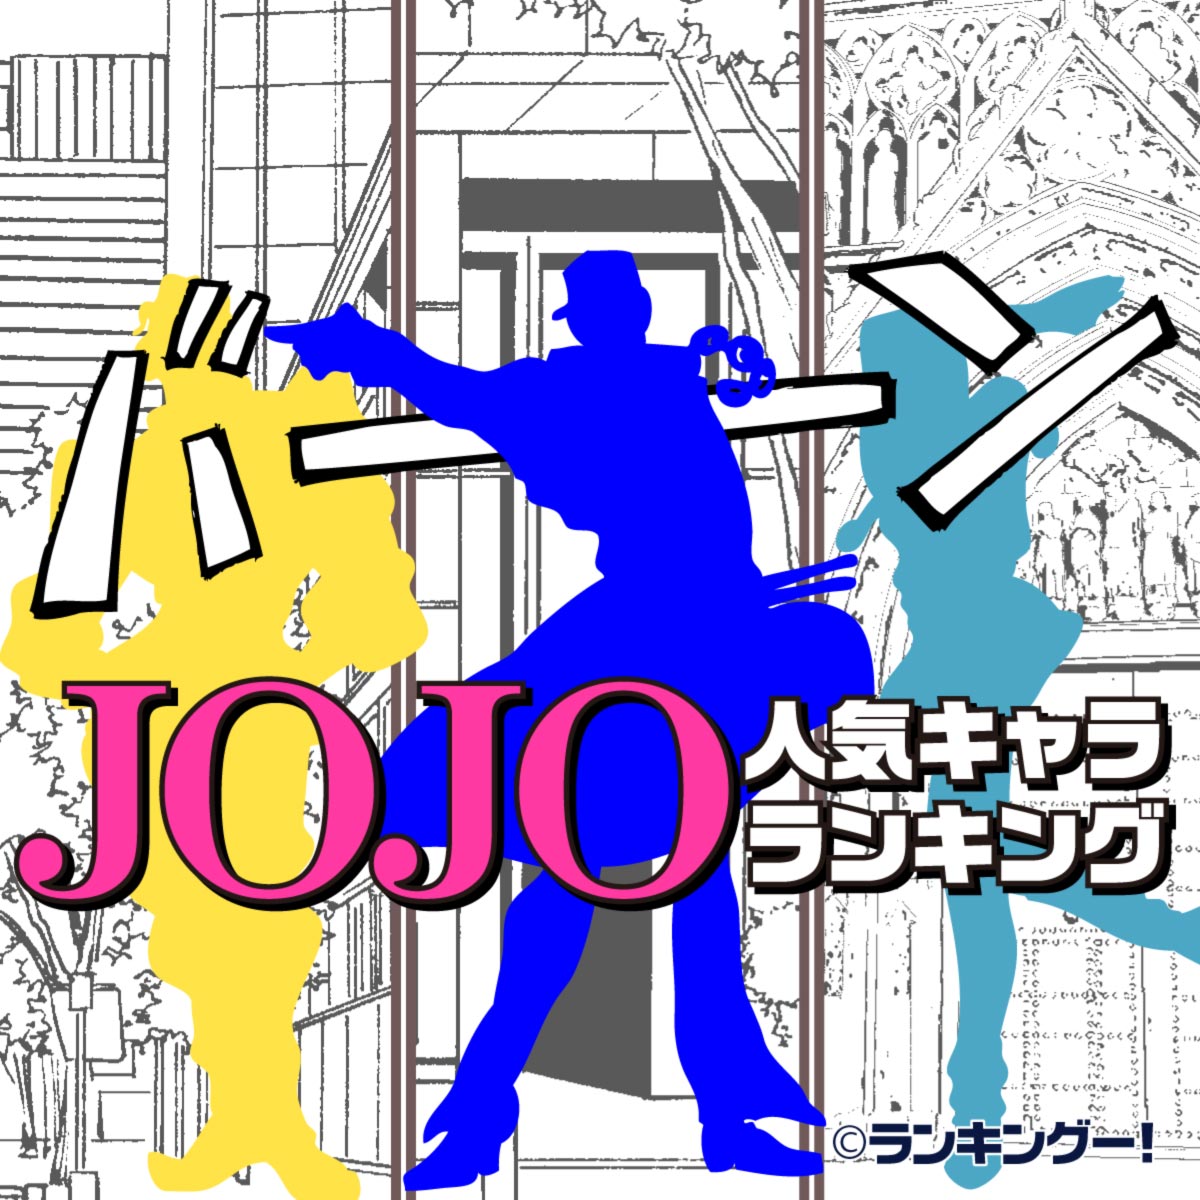 ジョジョ Jojo の奇妙な冒険 人気キャラランキングtop 3 5位 ランキングー